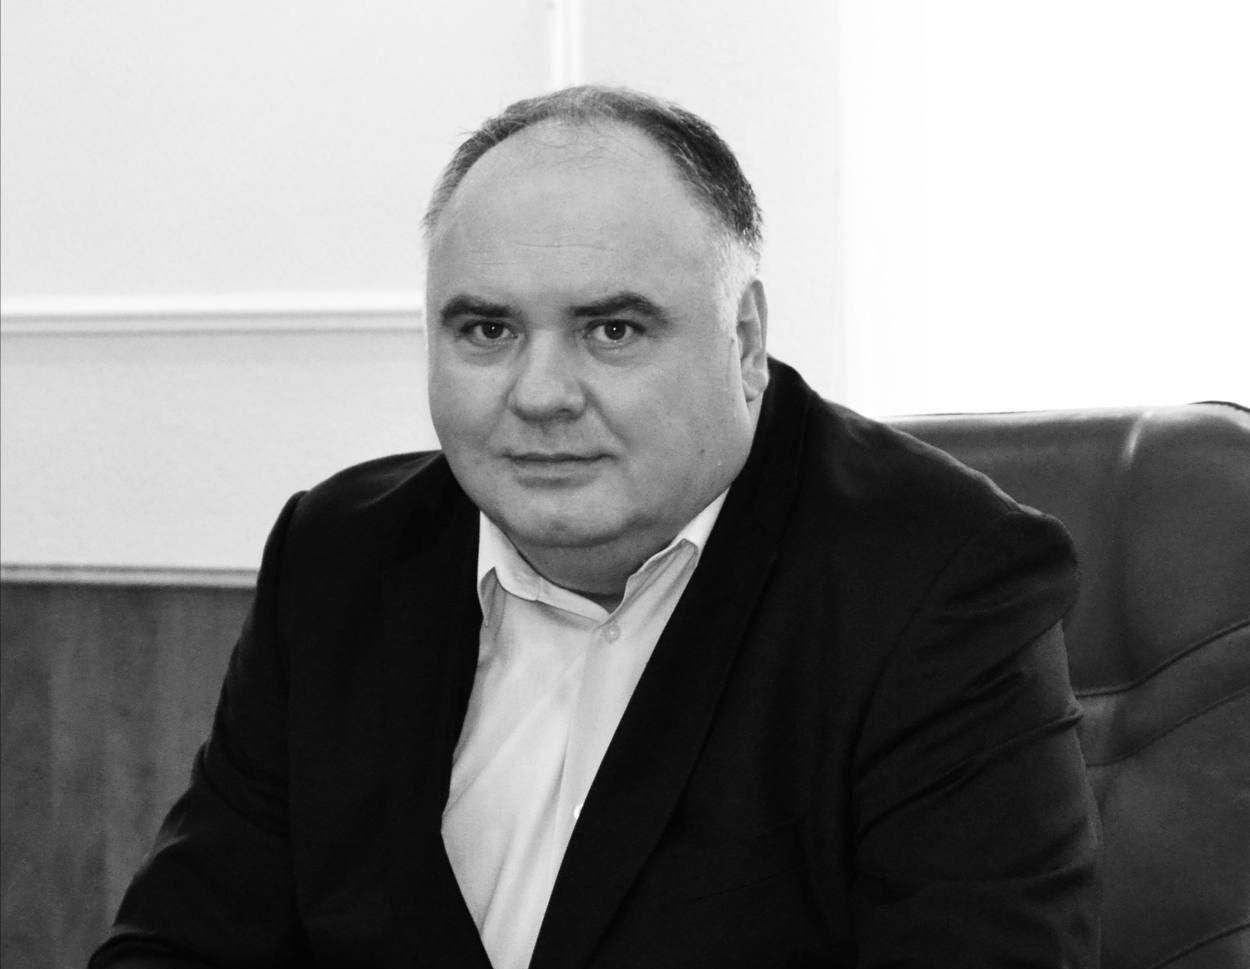 От COVID-19 умер председатель Подольского района Киева Виктор Смирнов